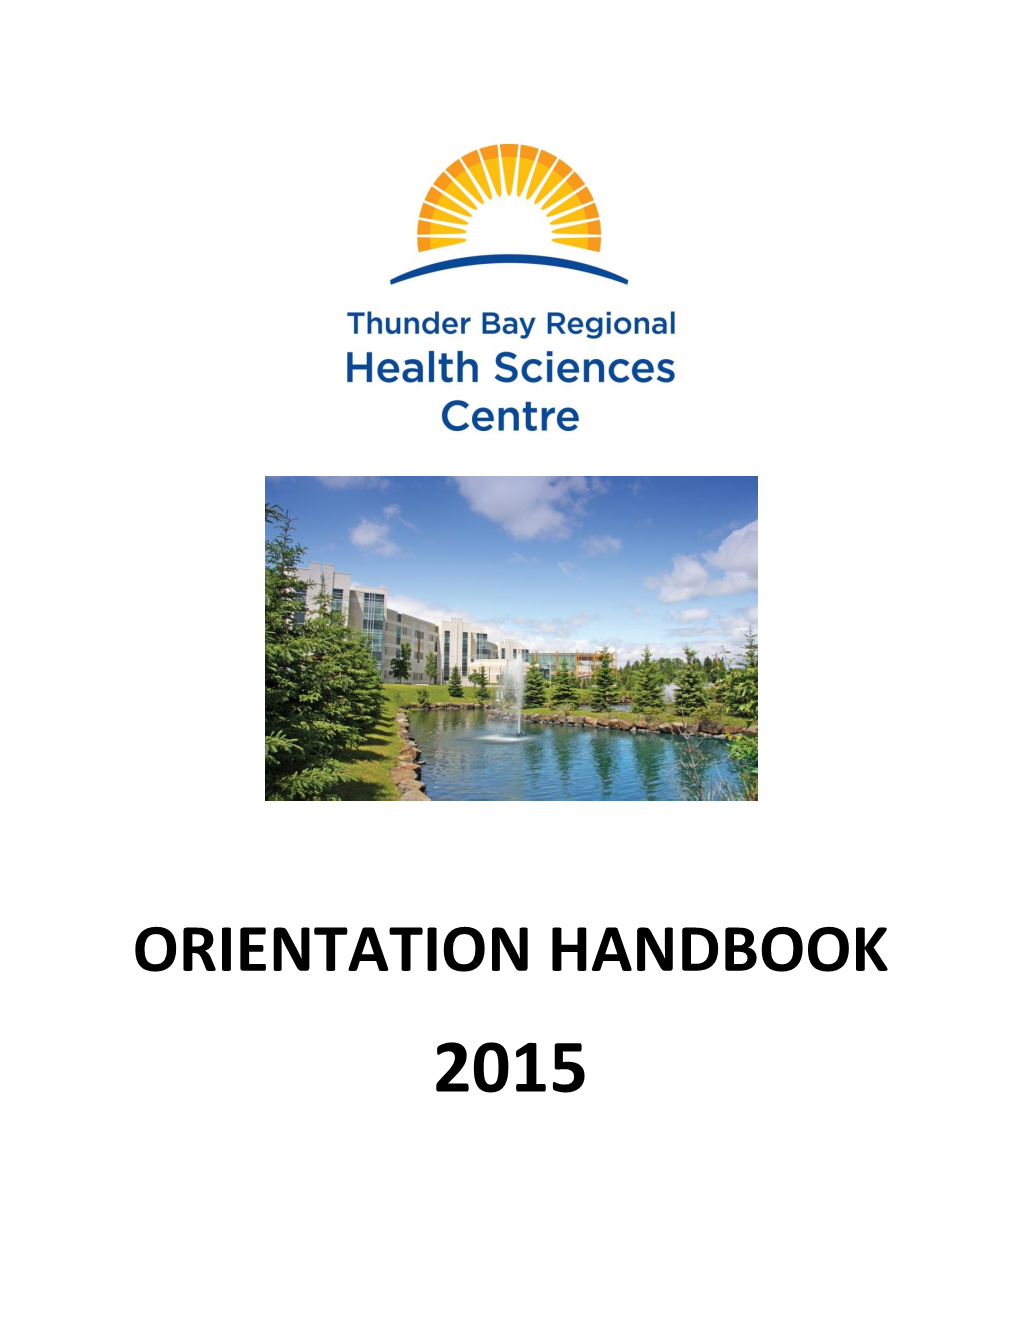 Orientation Handbook 2015